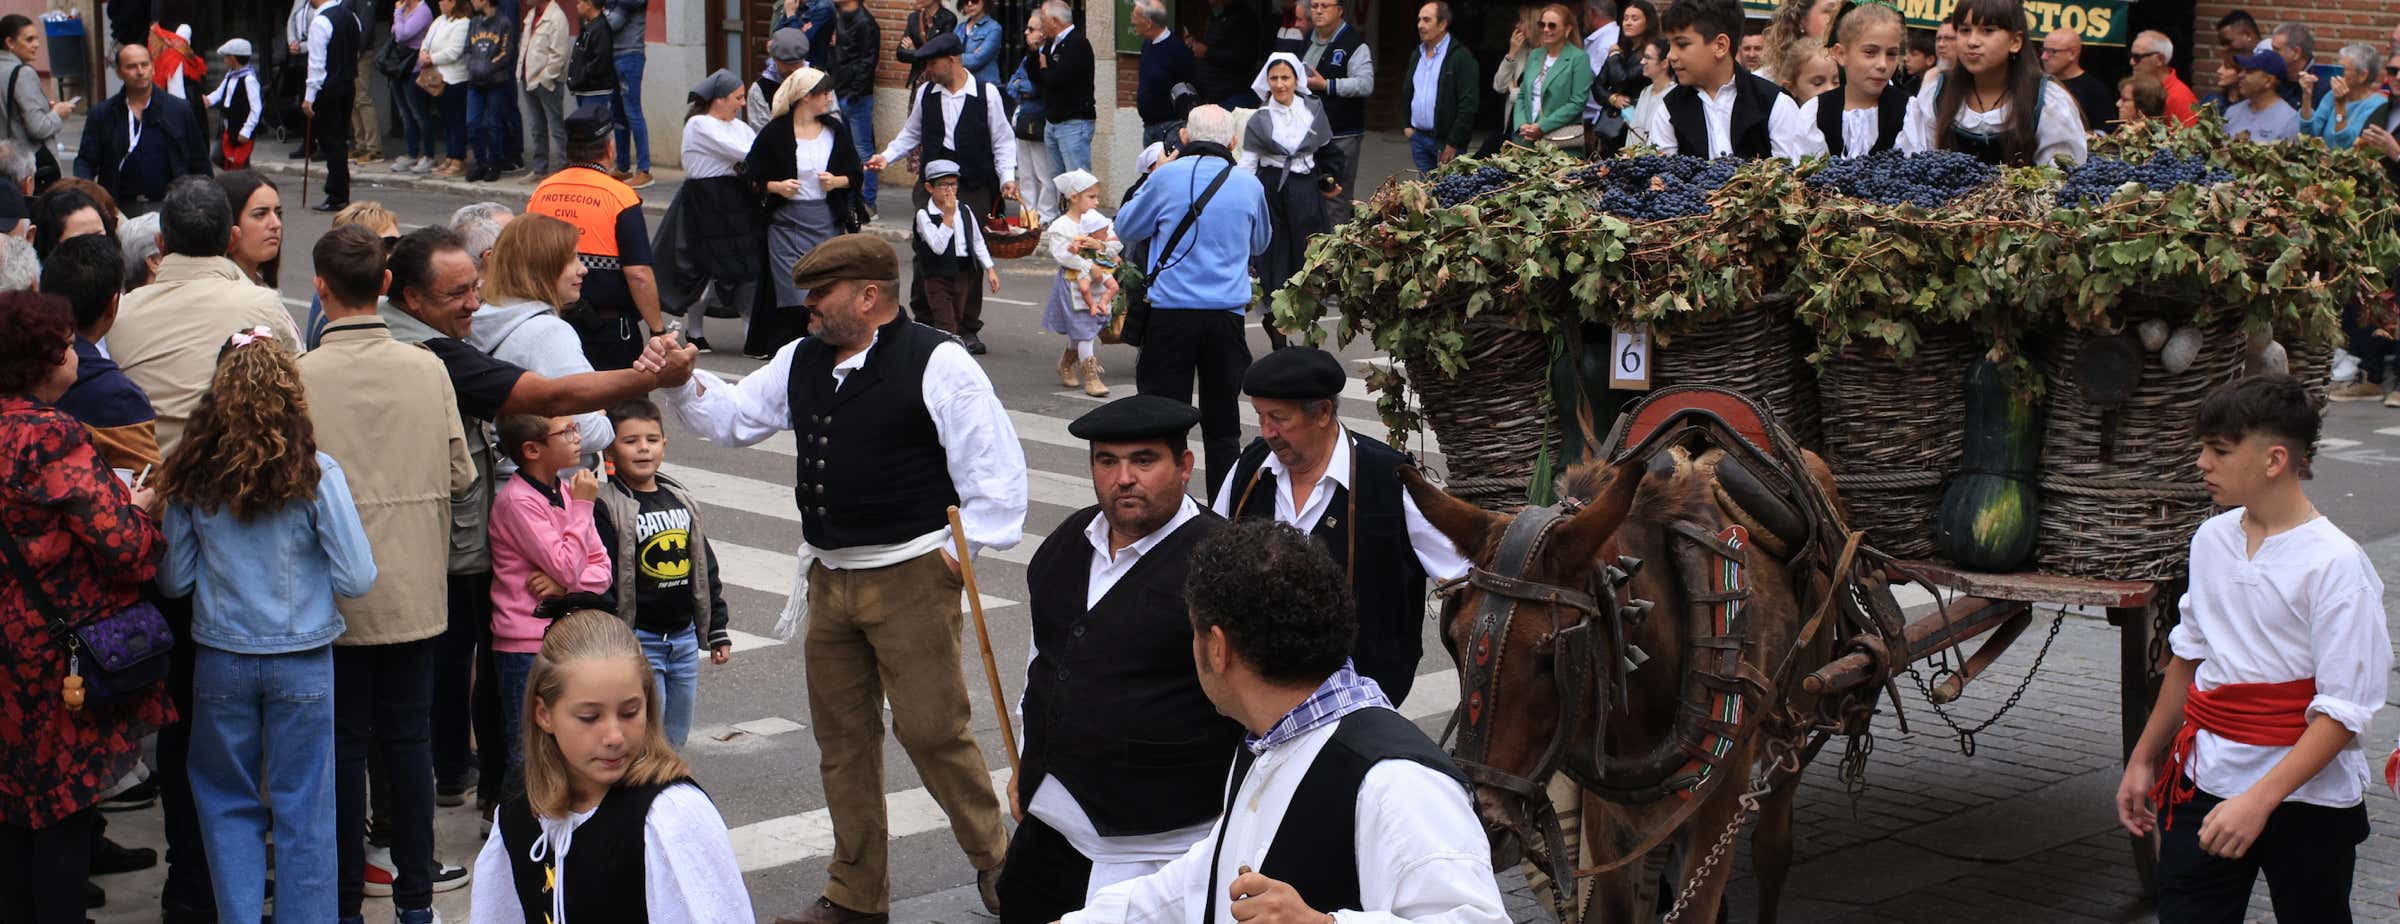 La imagen muestra a muchas personas festejando durante la fiesta del vino y el desfile en Toro. Un burro tira de un carro tradicional de madera lleno de uvas y calabazas.